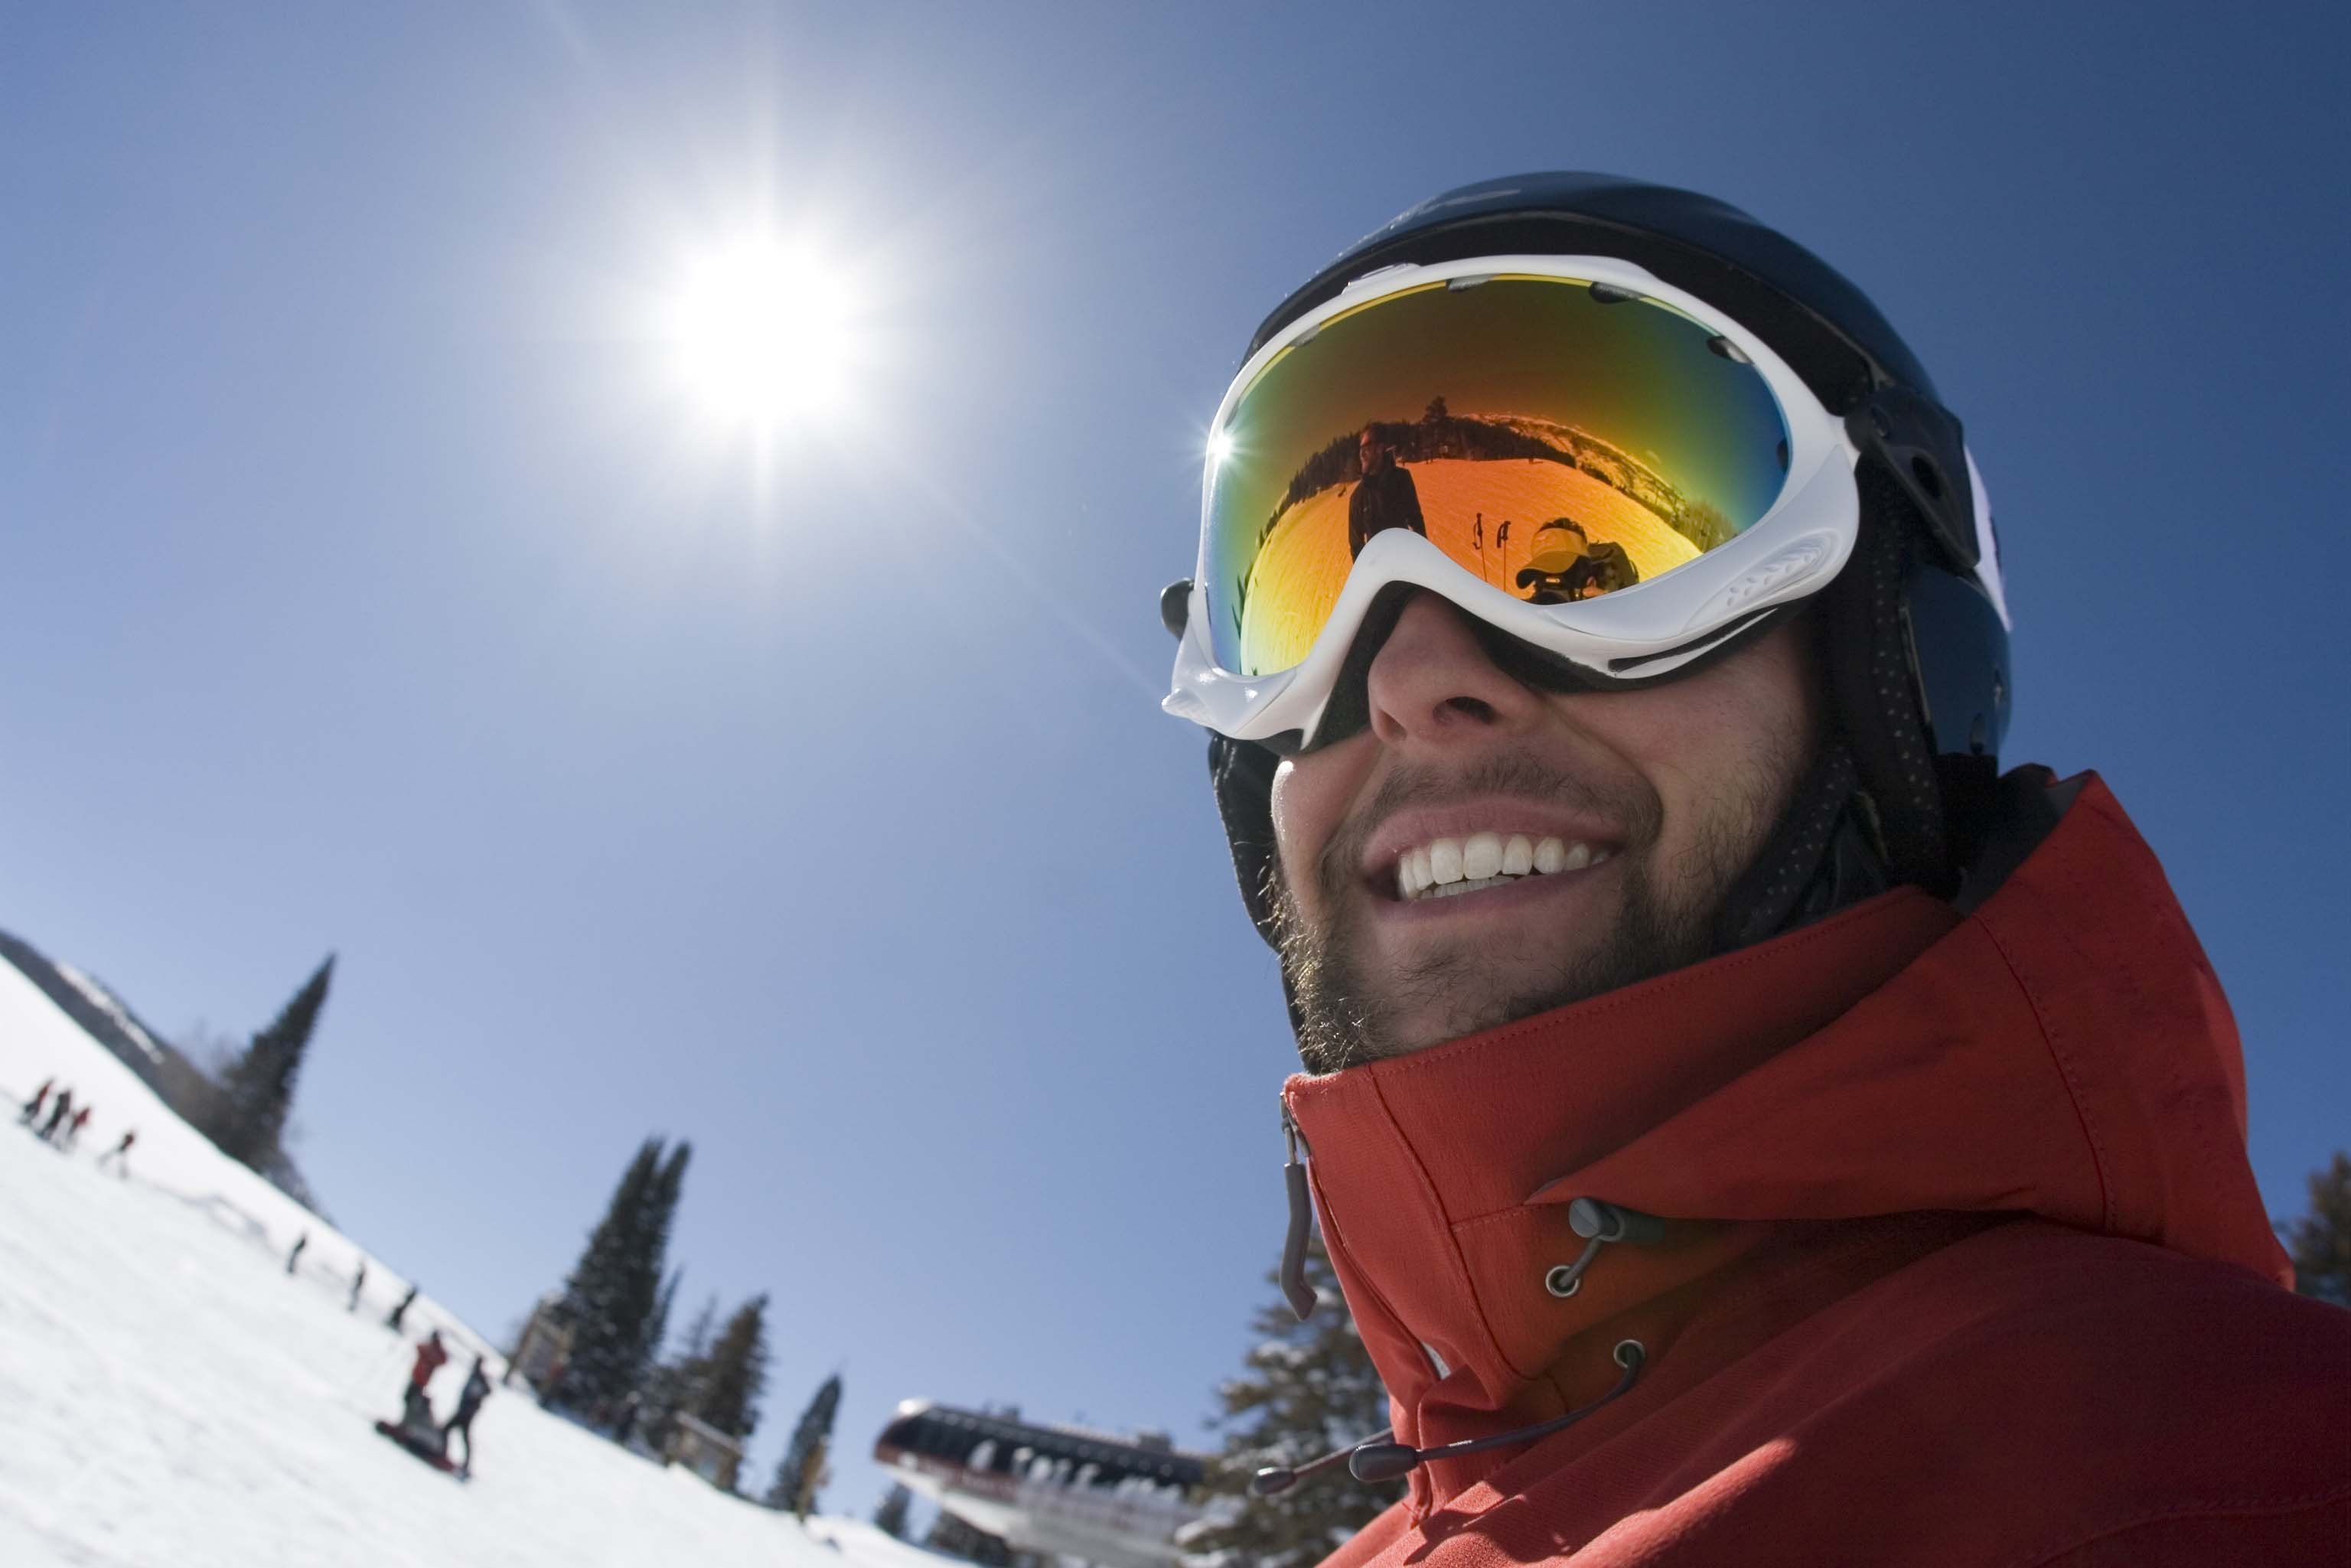 The good ski. Селфи горные лыжи. Горнолыжник в очках. Селфи в горнолыжной маске. Мужчина на горных лыжах.